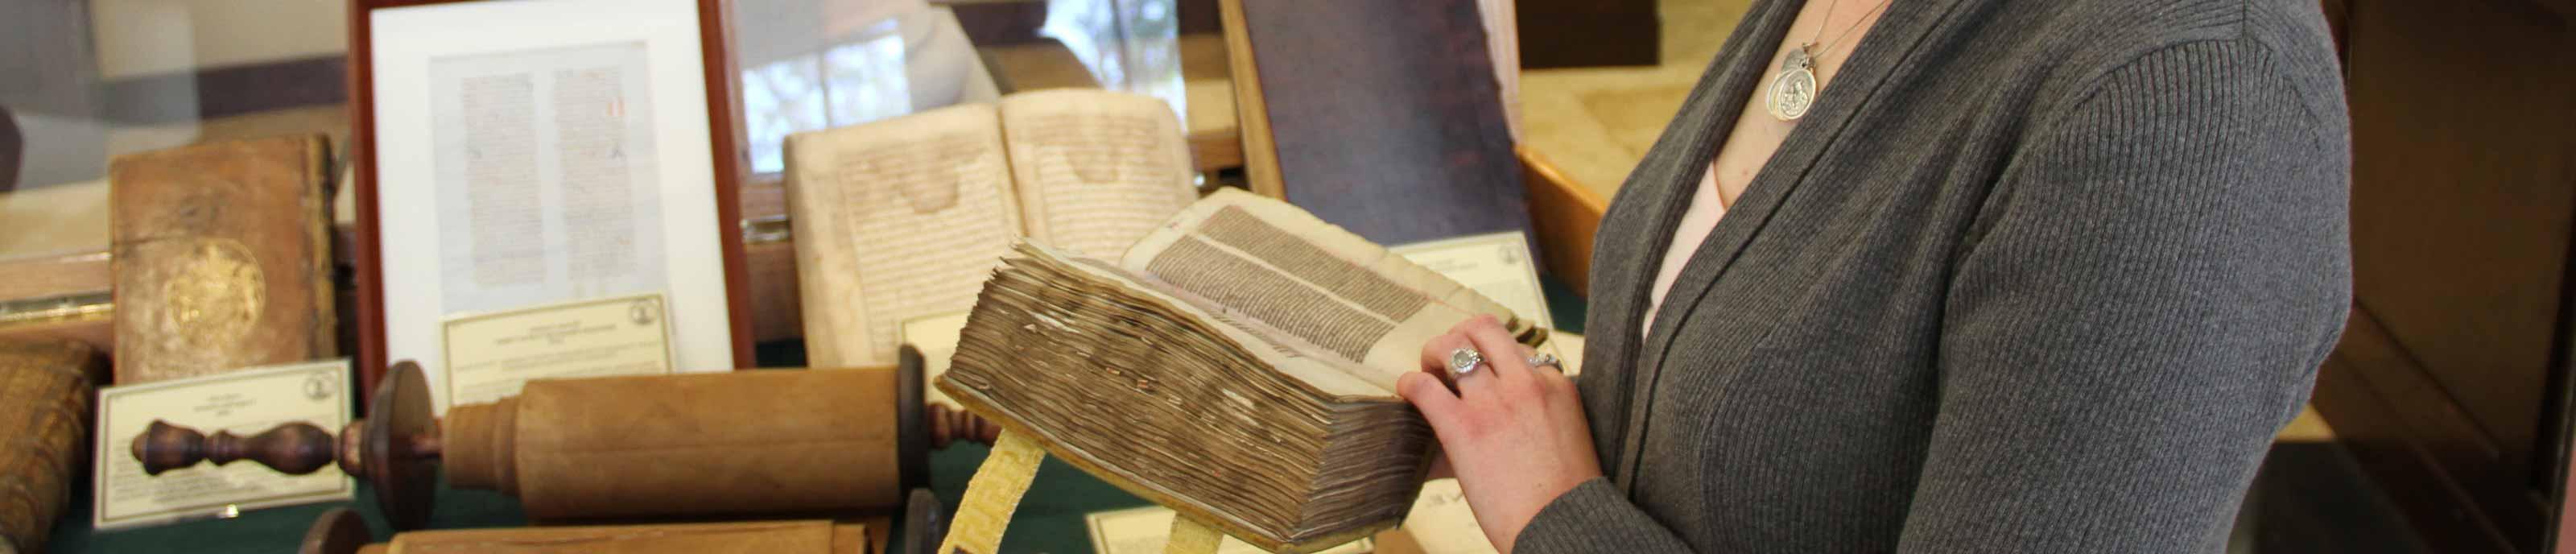 学生 examining an old tome during the Wisdom of the Ages exhibit